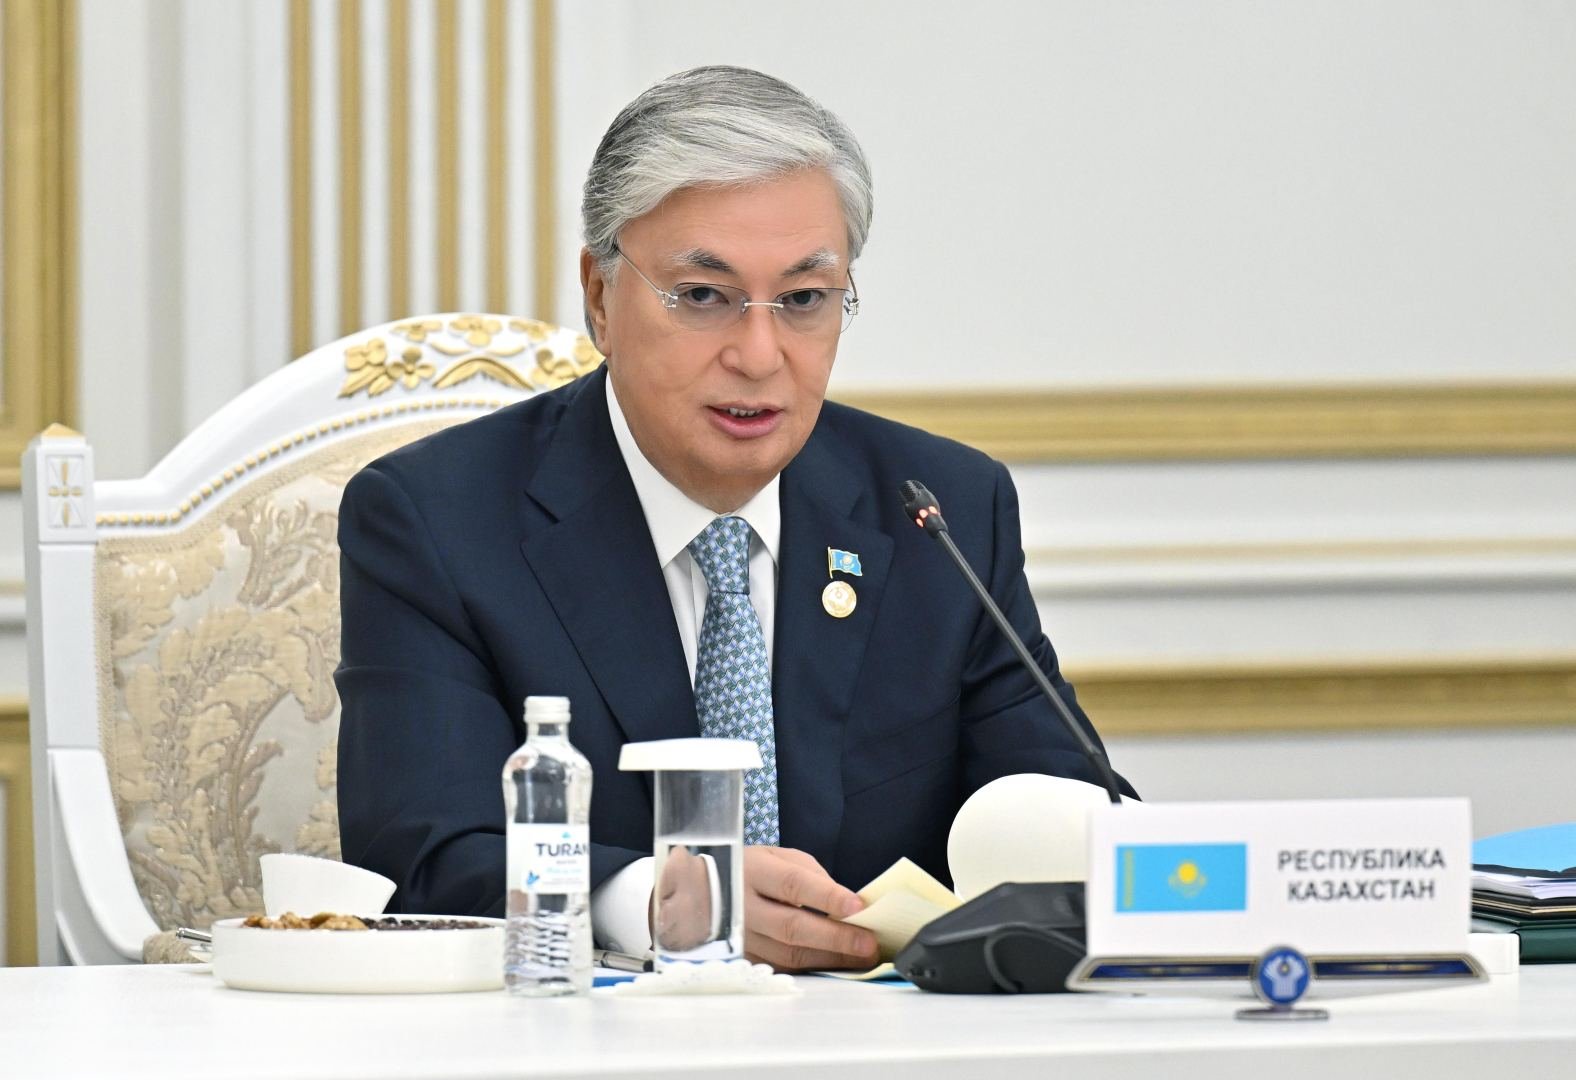 Рынки стран СНГ являются приоритетными для Казахстана - Токаев